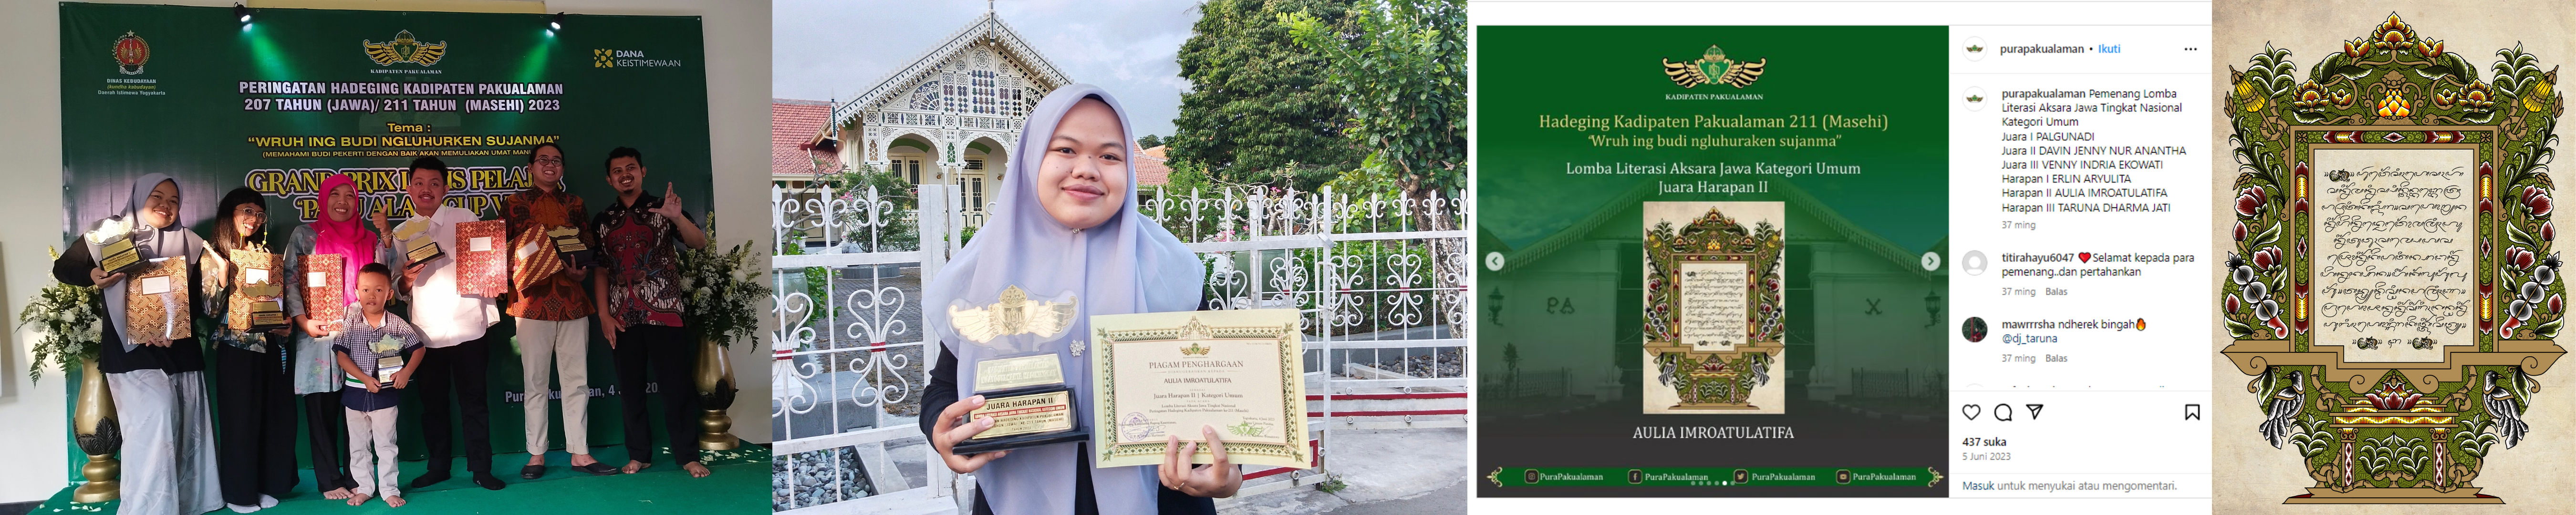 Foto Lomba Literasi Aksara Jawa Kategori Umum  Tingkat Nasional Peringatan Hadeging  Kadipaten Pakualaman Ke-211 (Masehi)